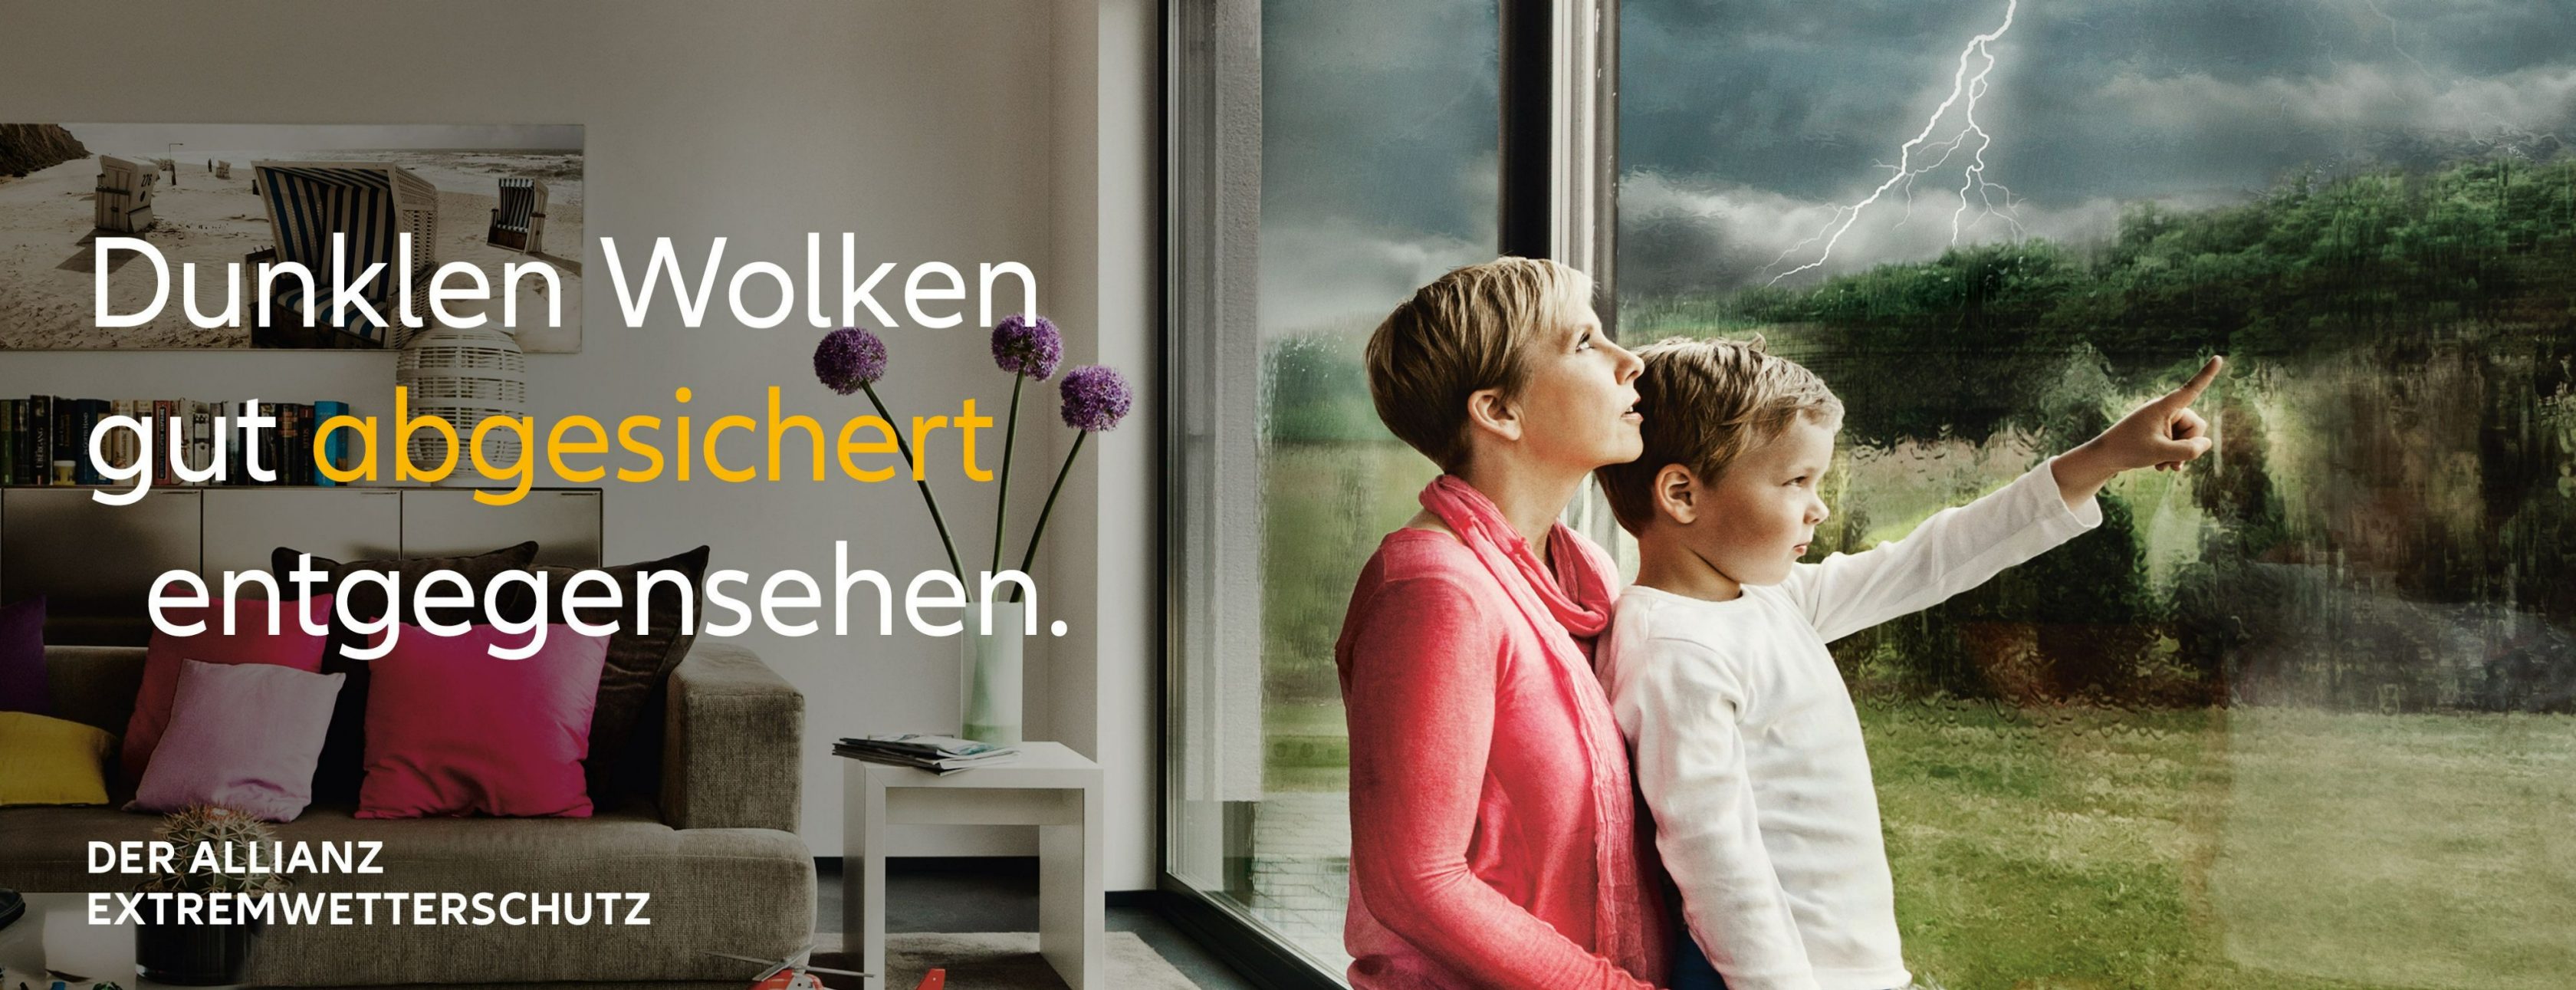 Allianz Versicherung Tobias Daniel Henschel Bad Schmiedeberg - Bild zu Extremwetterschutz